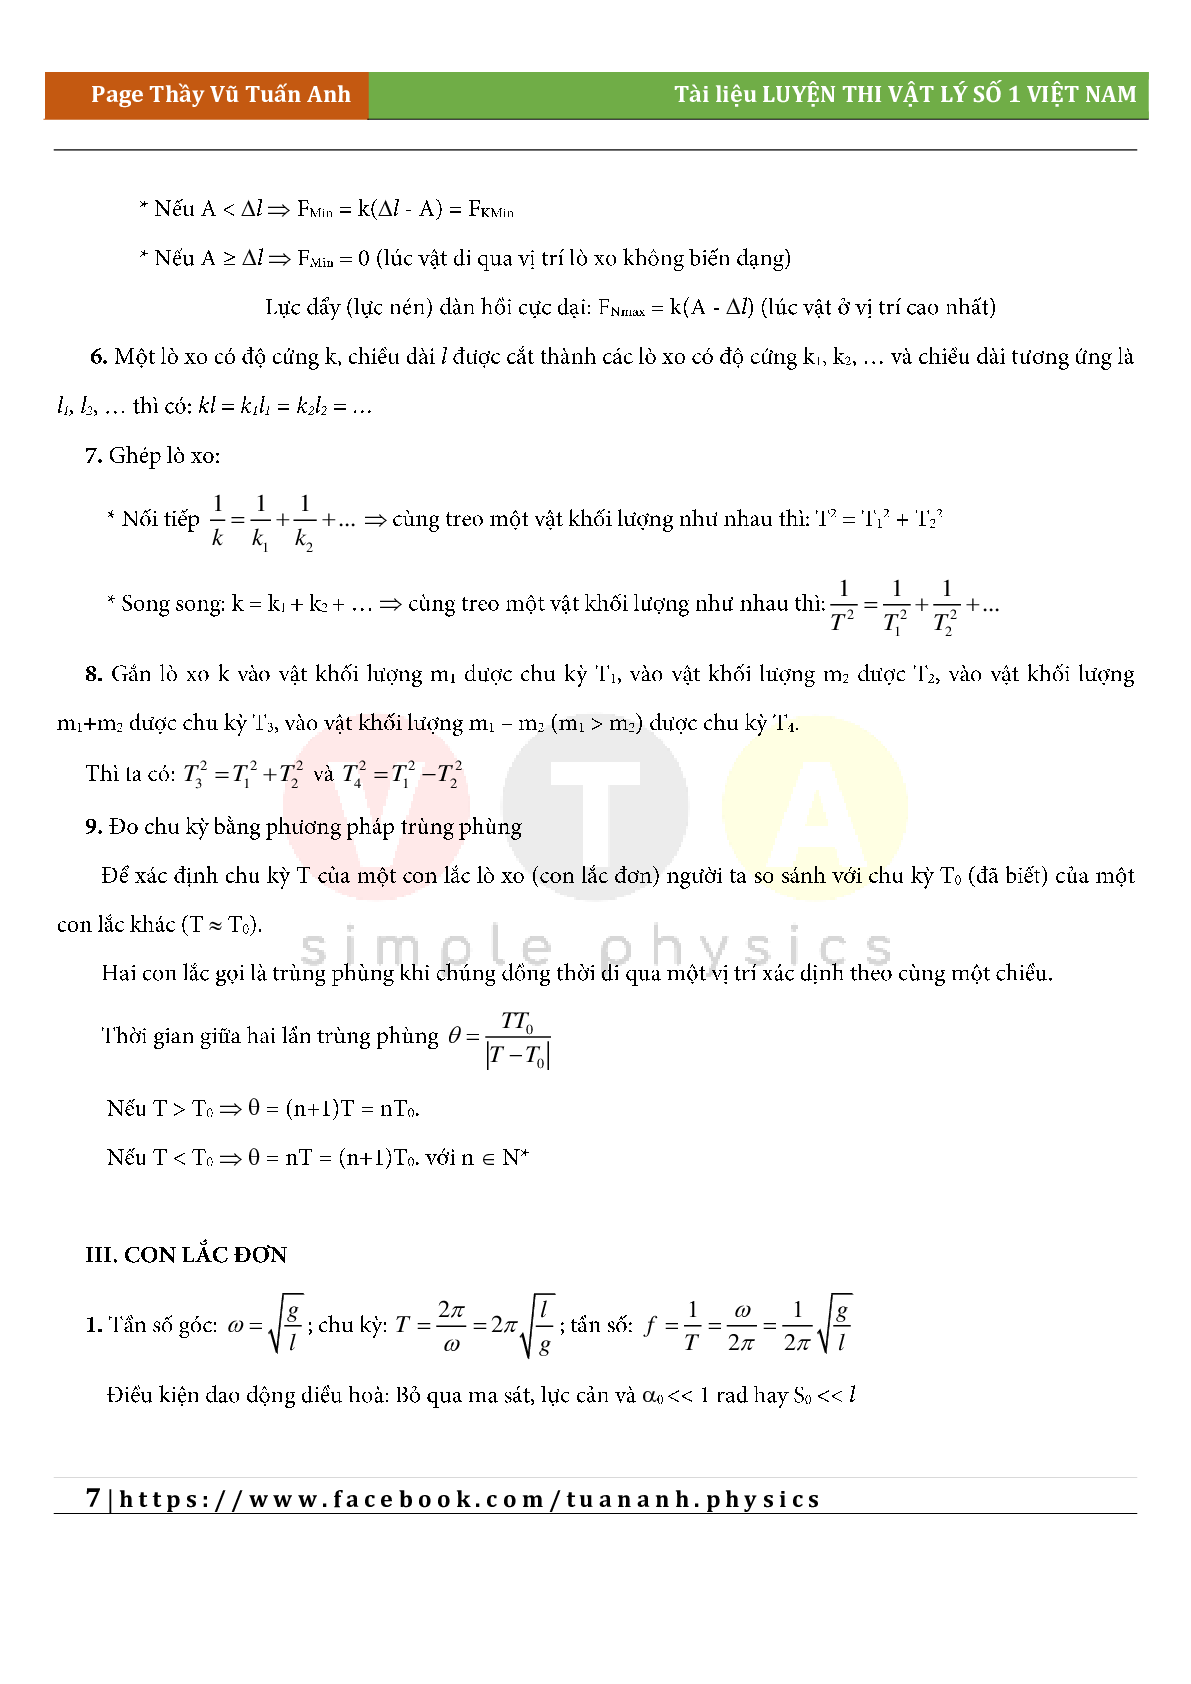 Công thức giải siêu nhanh môn Vật lý lớp 12 cả năm (trang 7)